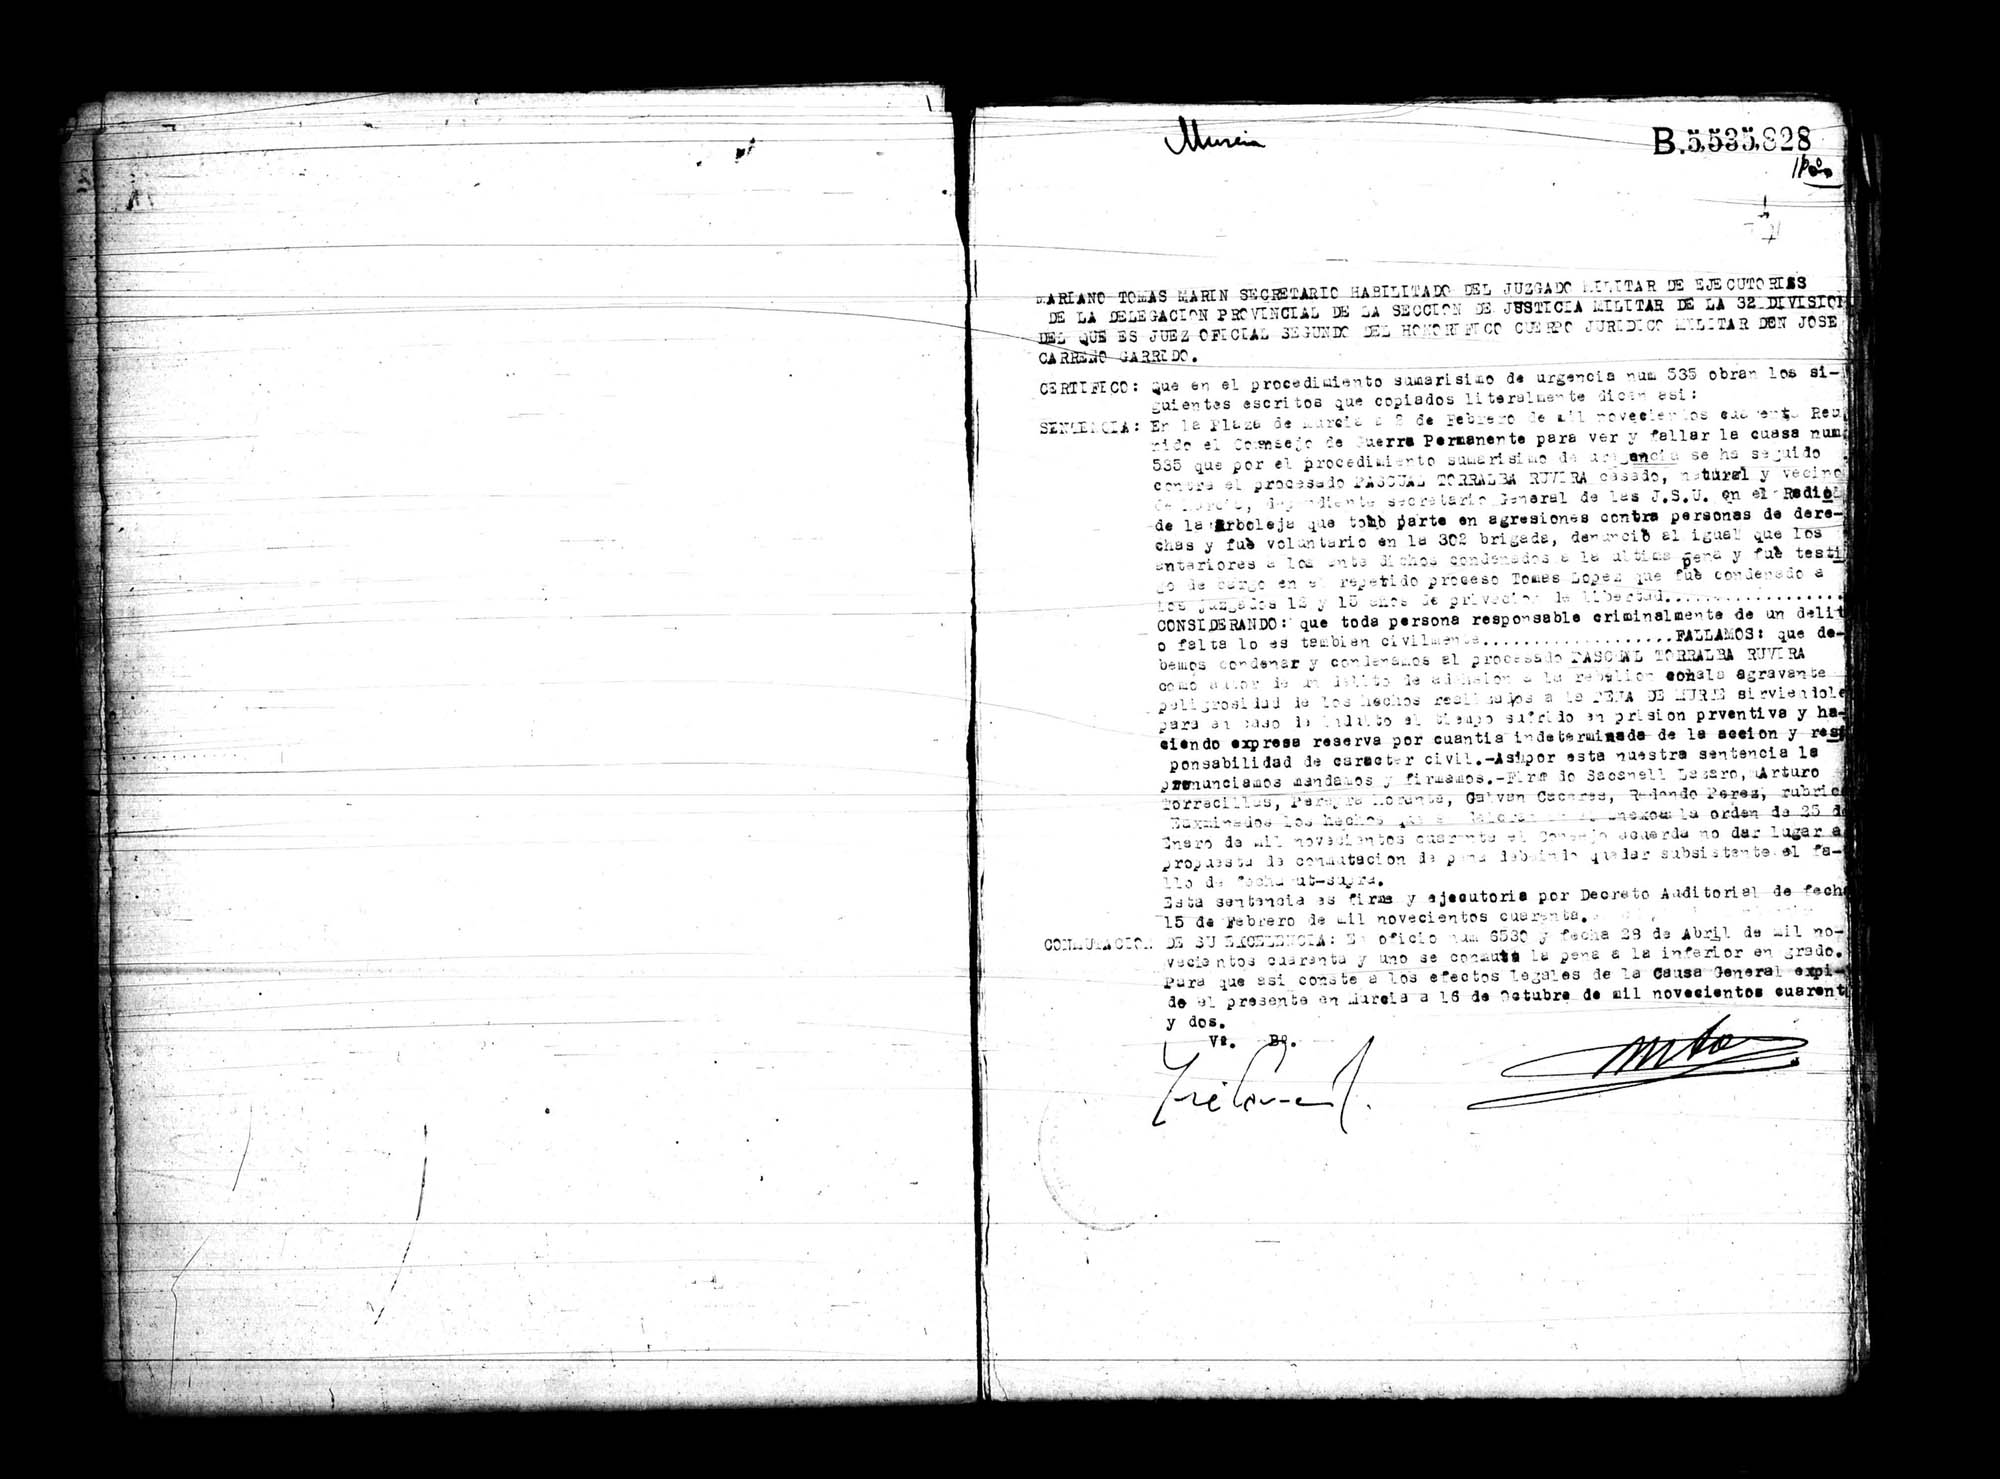 Certificado de la sentencia pronunciada contra Pascual Torralba Ruvira, causa 535, el 2 de febrero de 1940 en Murcia.